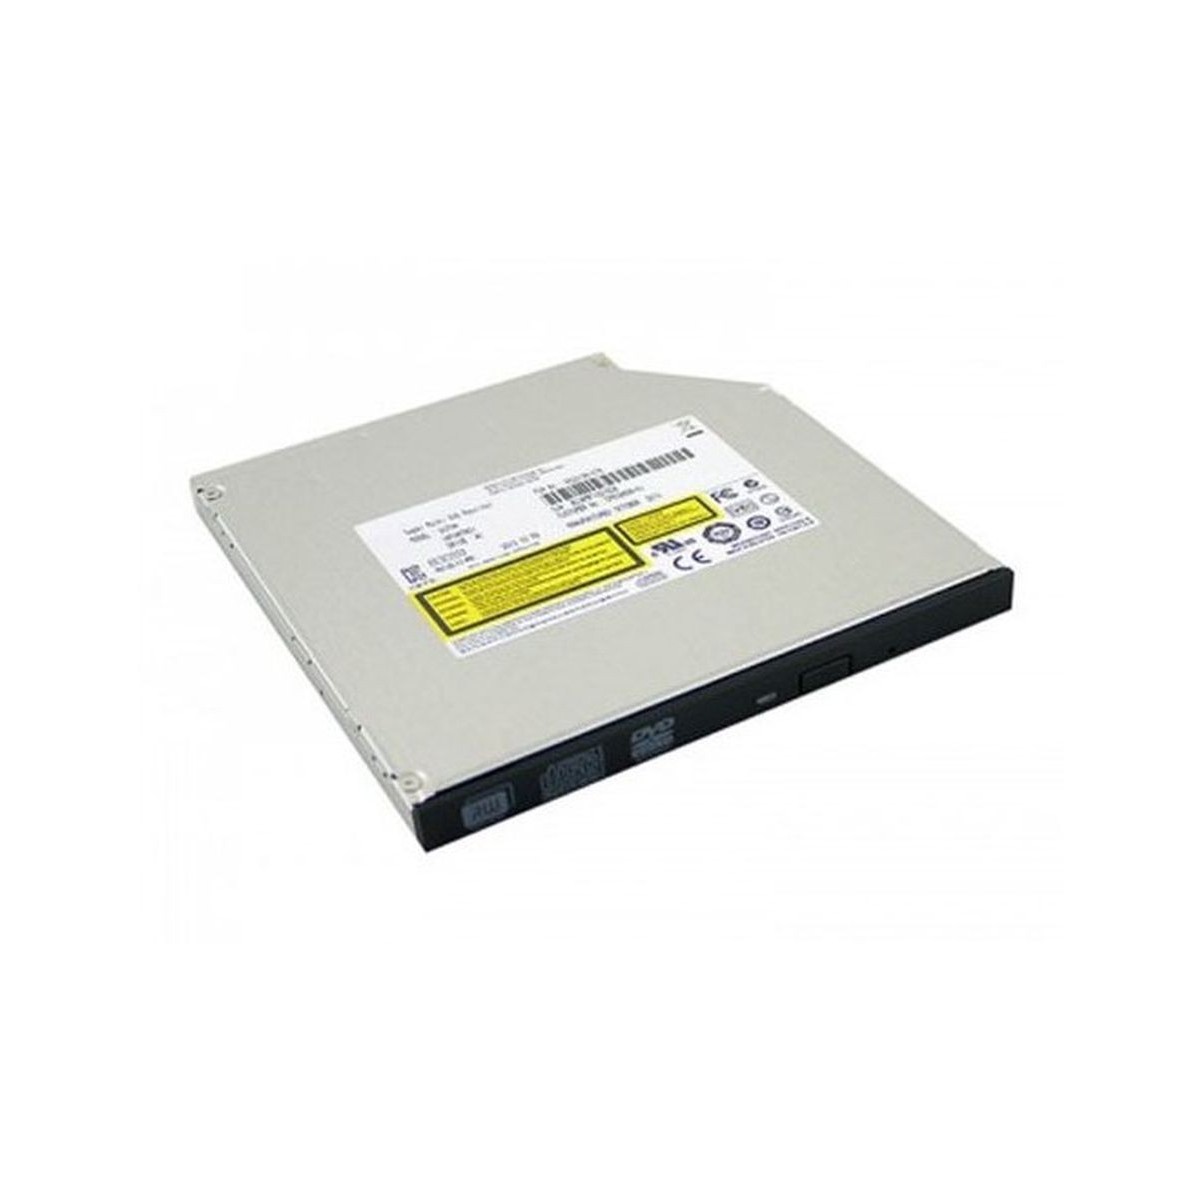 NAPED CD-RW-/DVD IBM GCC-4244N 39M3541